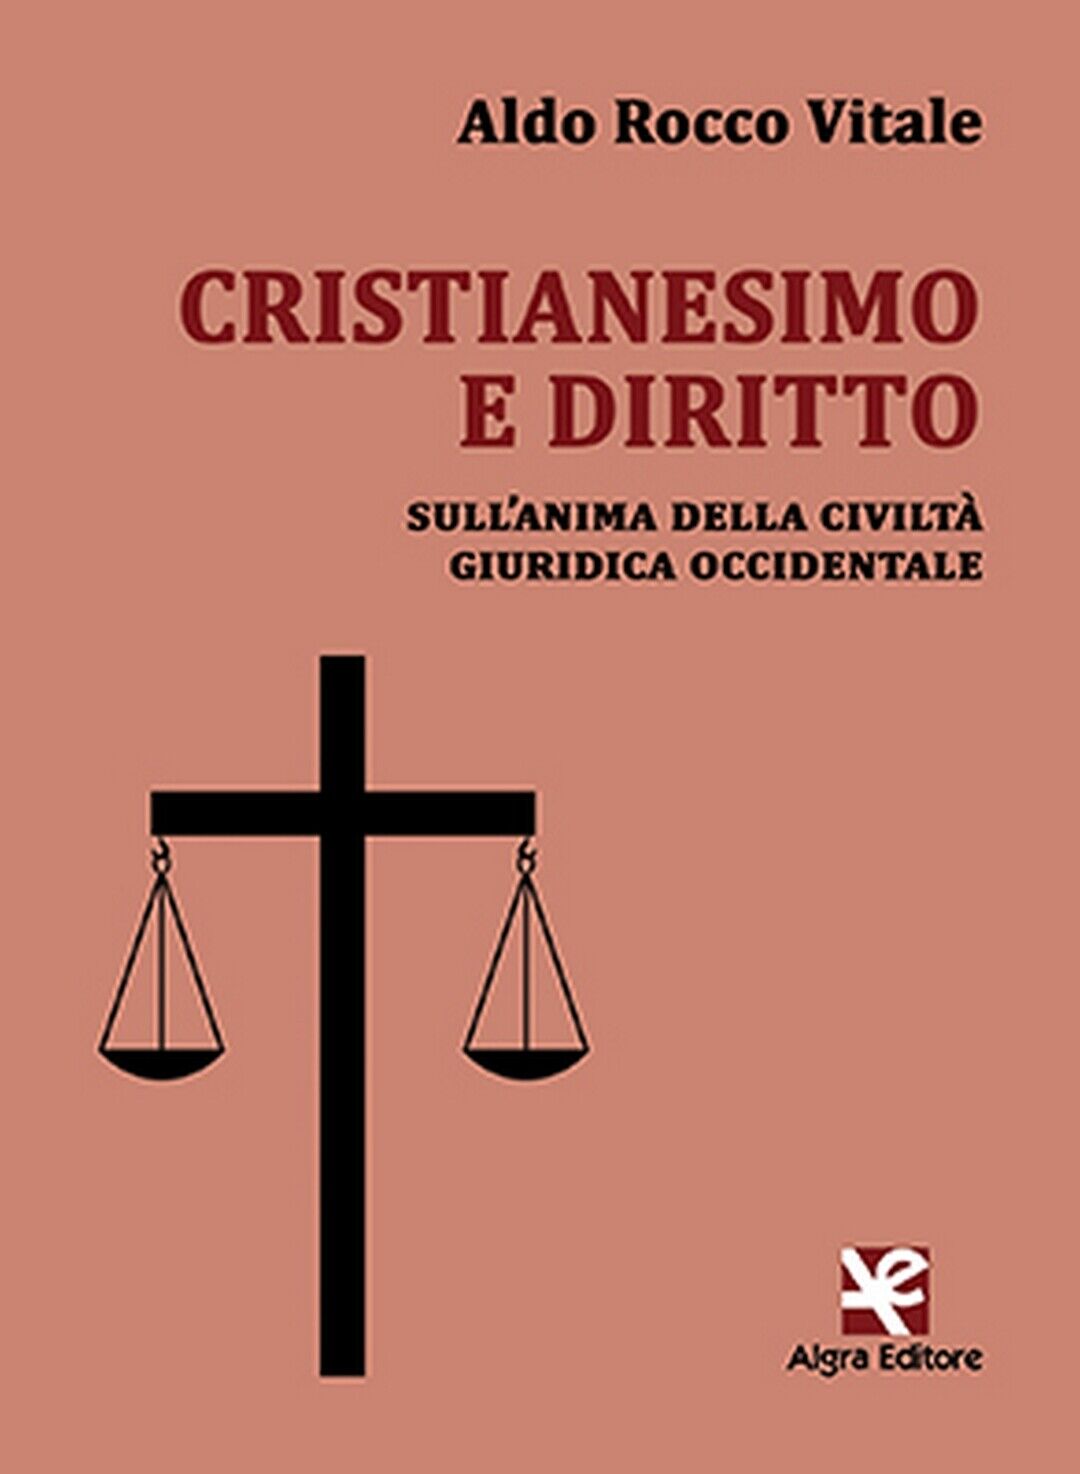 Cristianesimo e diritto  di Aldo Rocco Vitale,  Algra Editore libro usato